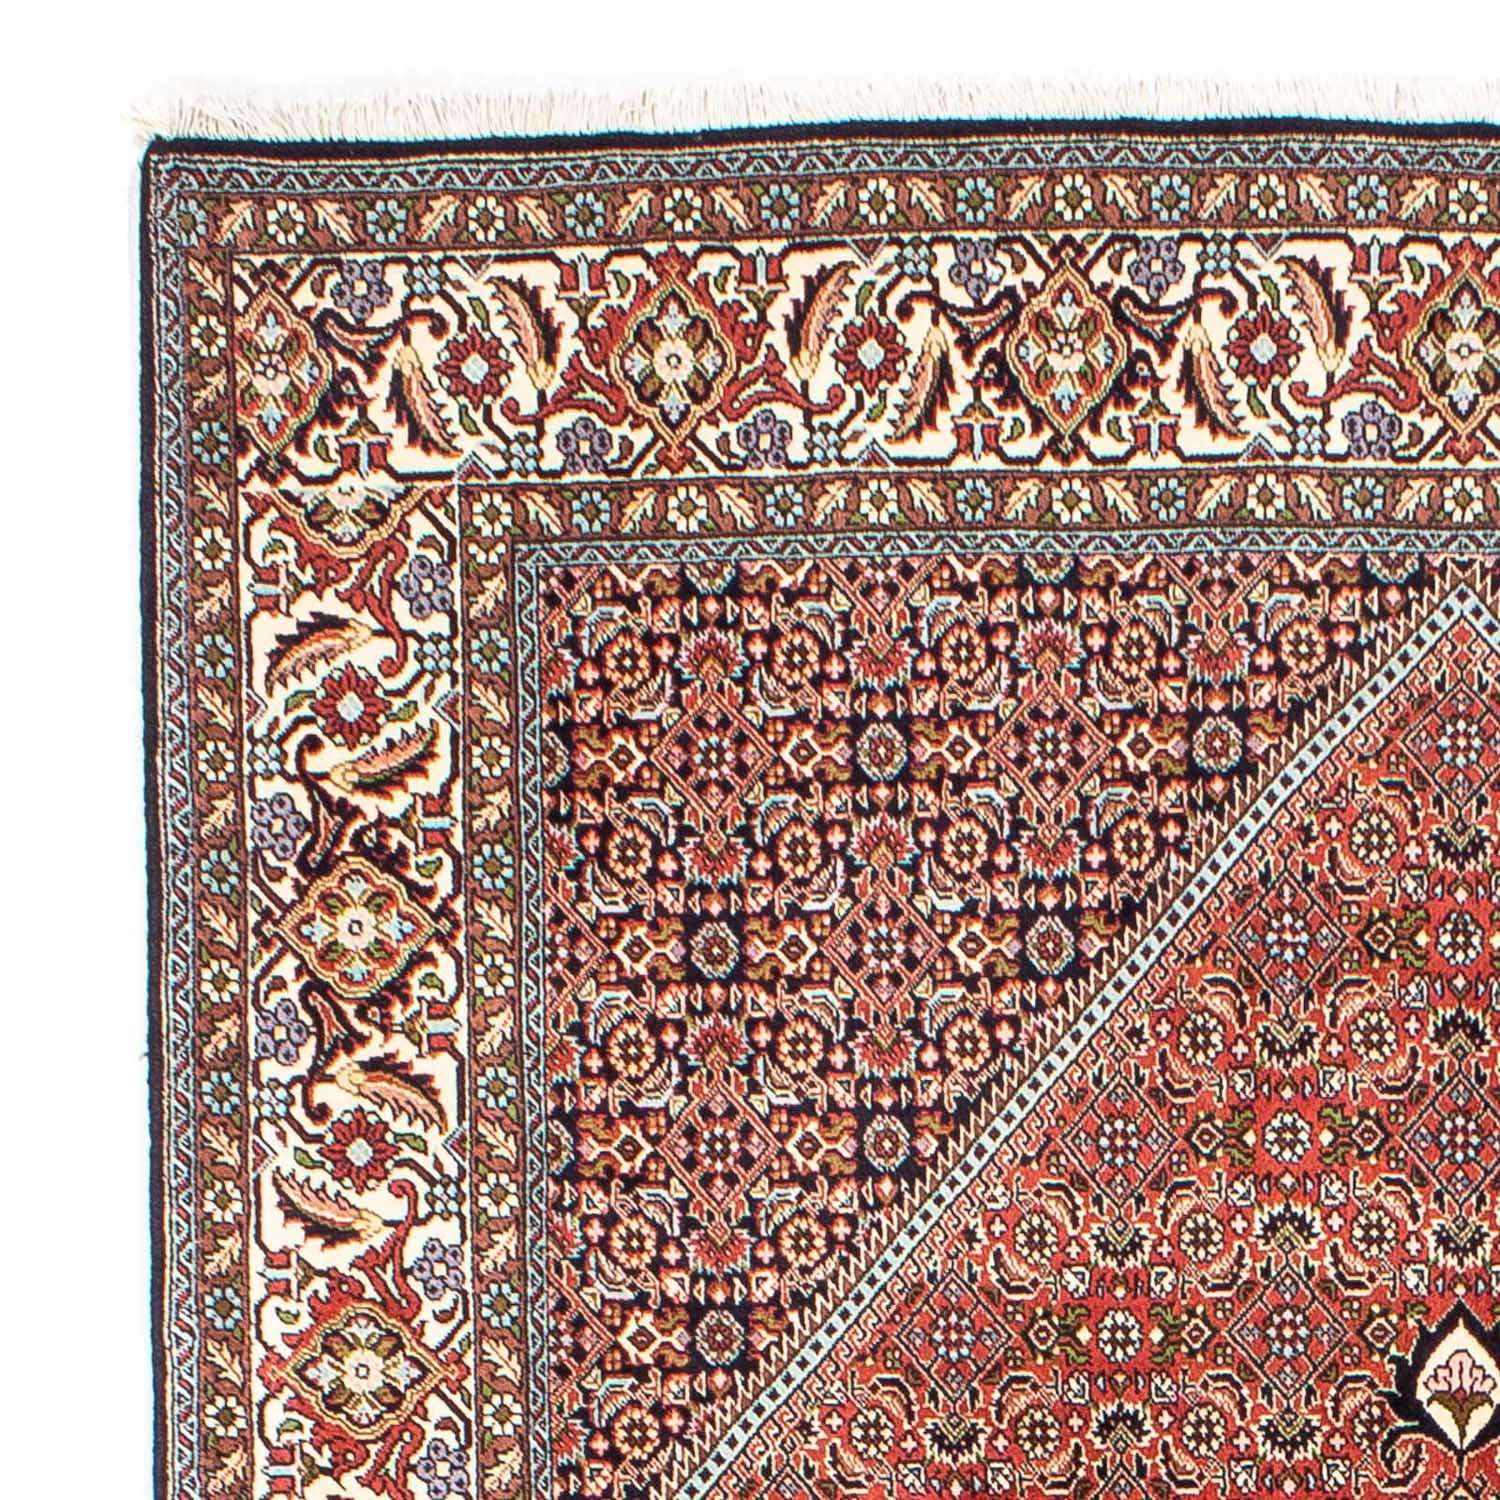 Tapis persan - Bidjar - 253 x 174 cm - rouge clair